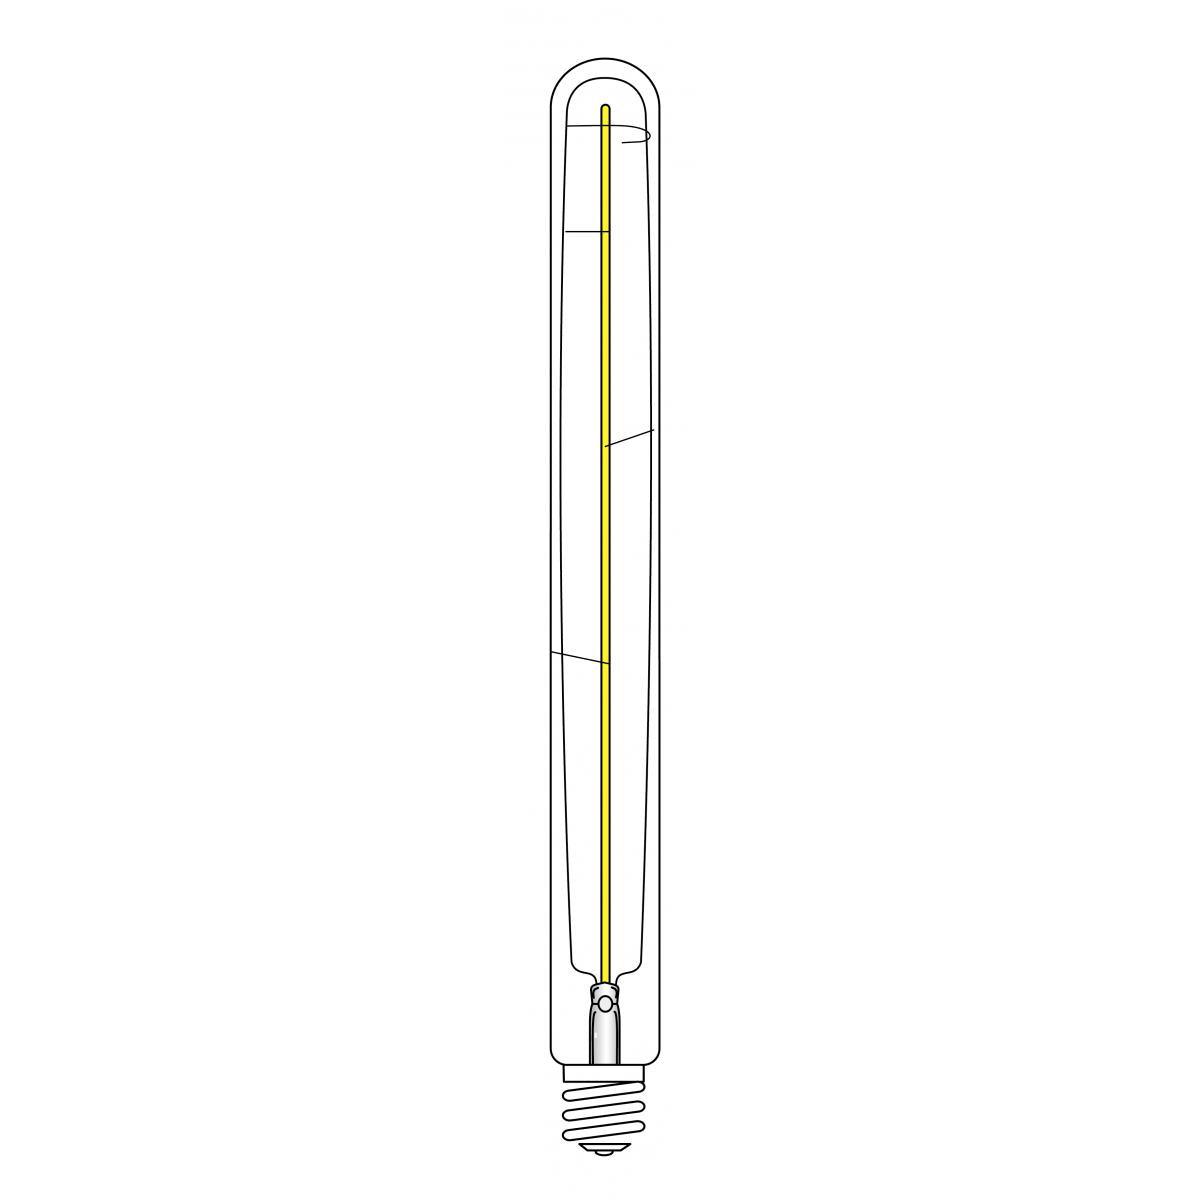 LED T9 Single Tube Bulb, 7 Watt, 620 Lumens, 2000K, E26 Medium Base, Amber Finish